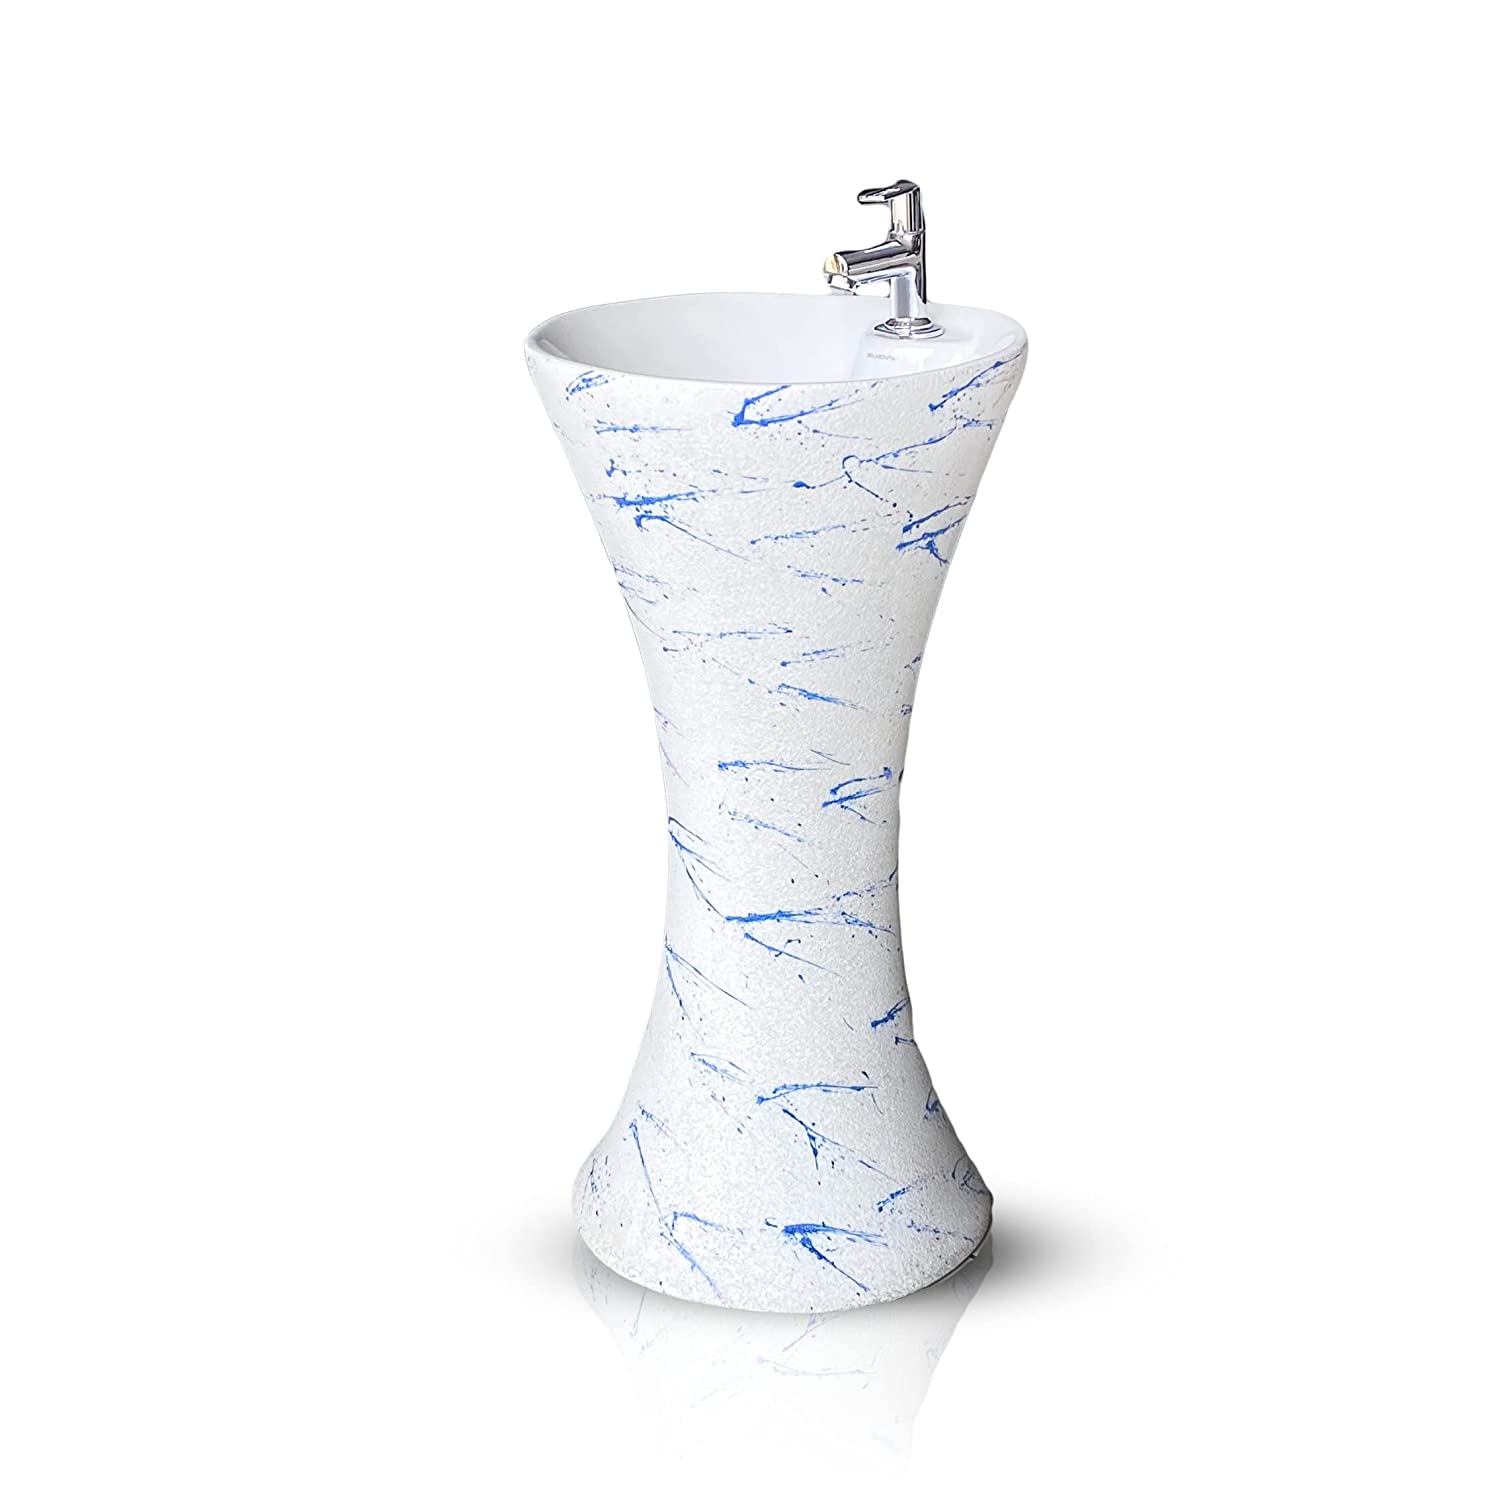 B Backline Ceramic Pedestal Free Standing Wash Basin Round 16 Inch Blue White